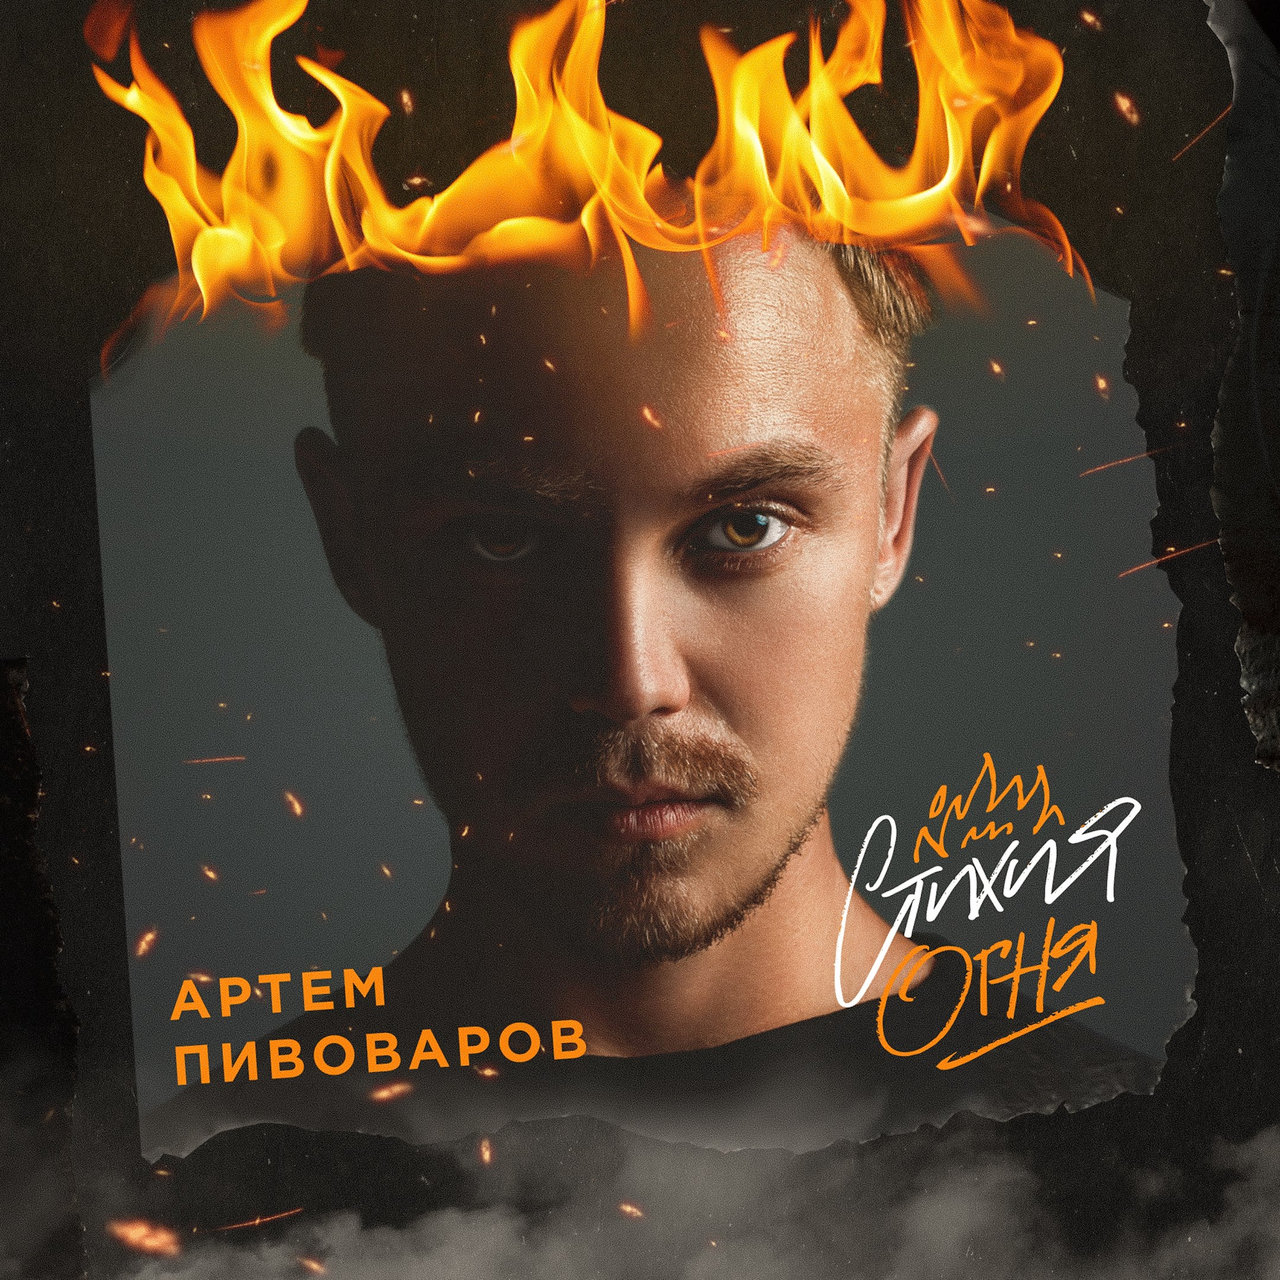 Artem Pivovarov Stikhiya ognya cover artwork